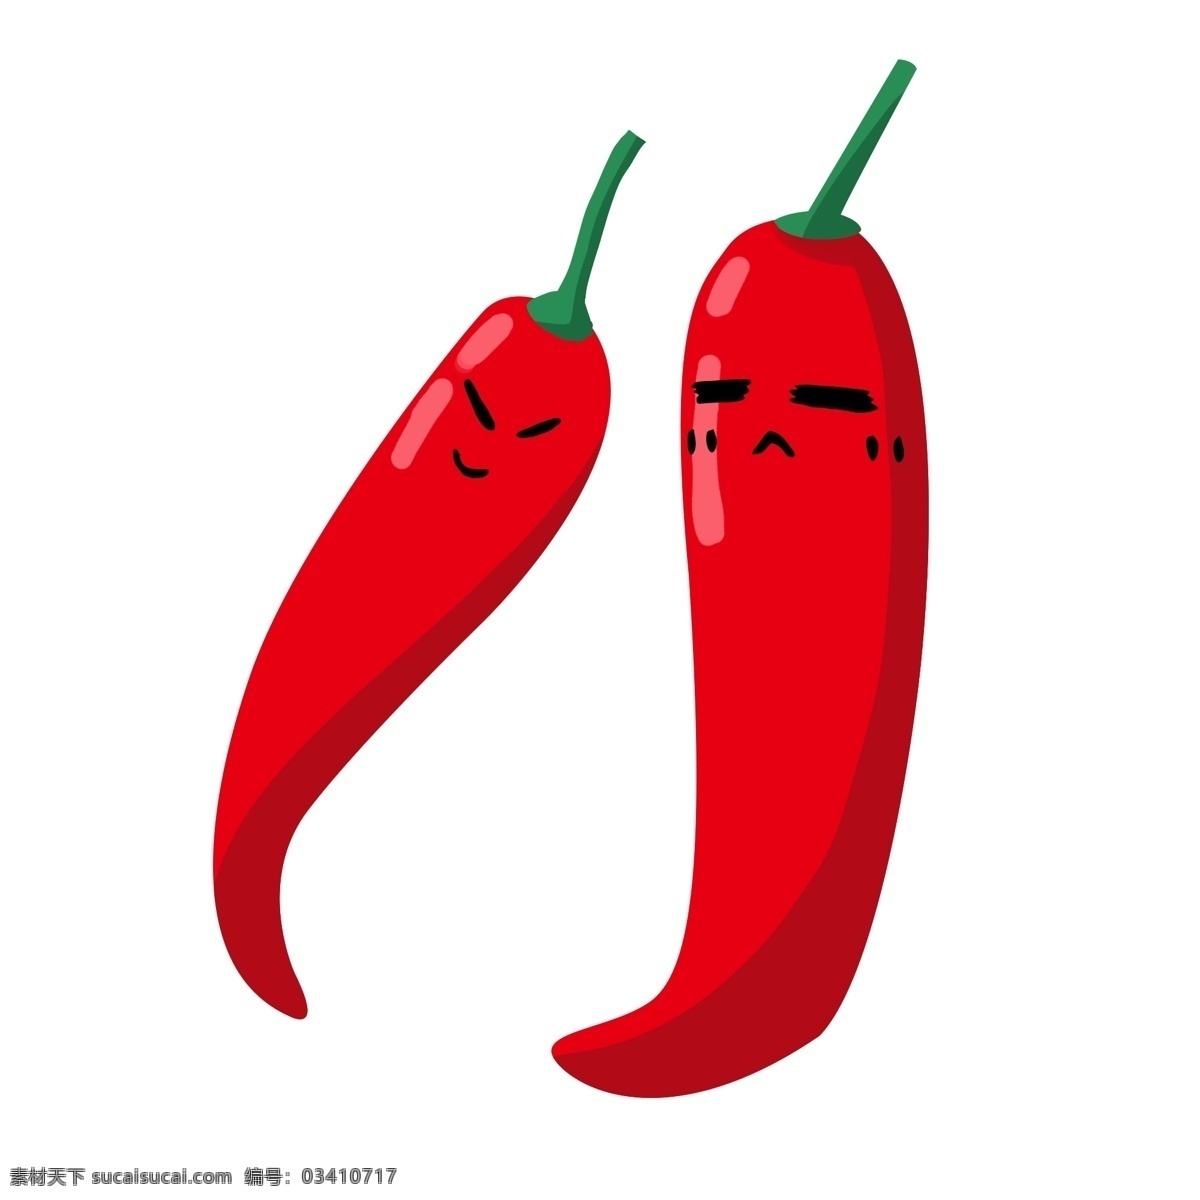 食 材 辣椒 卡通 插画 红色的辣椒 卡通插画 食材插画 蔬菜食材 调味料 食材 食物 美食 辛辣的辣椒